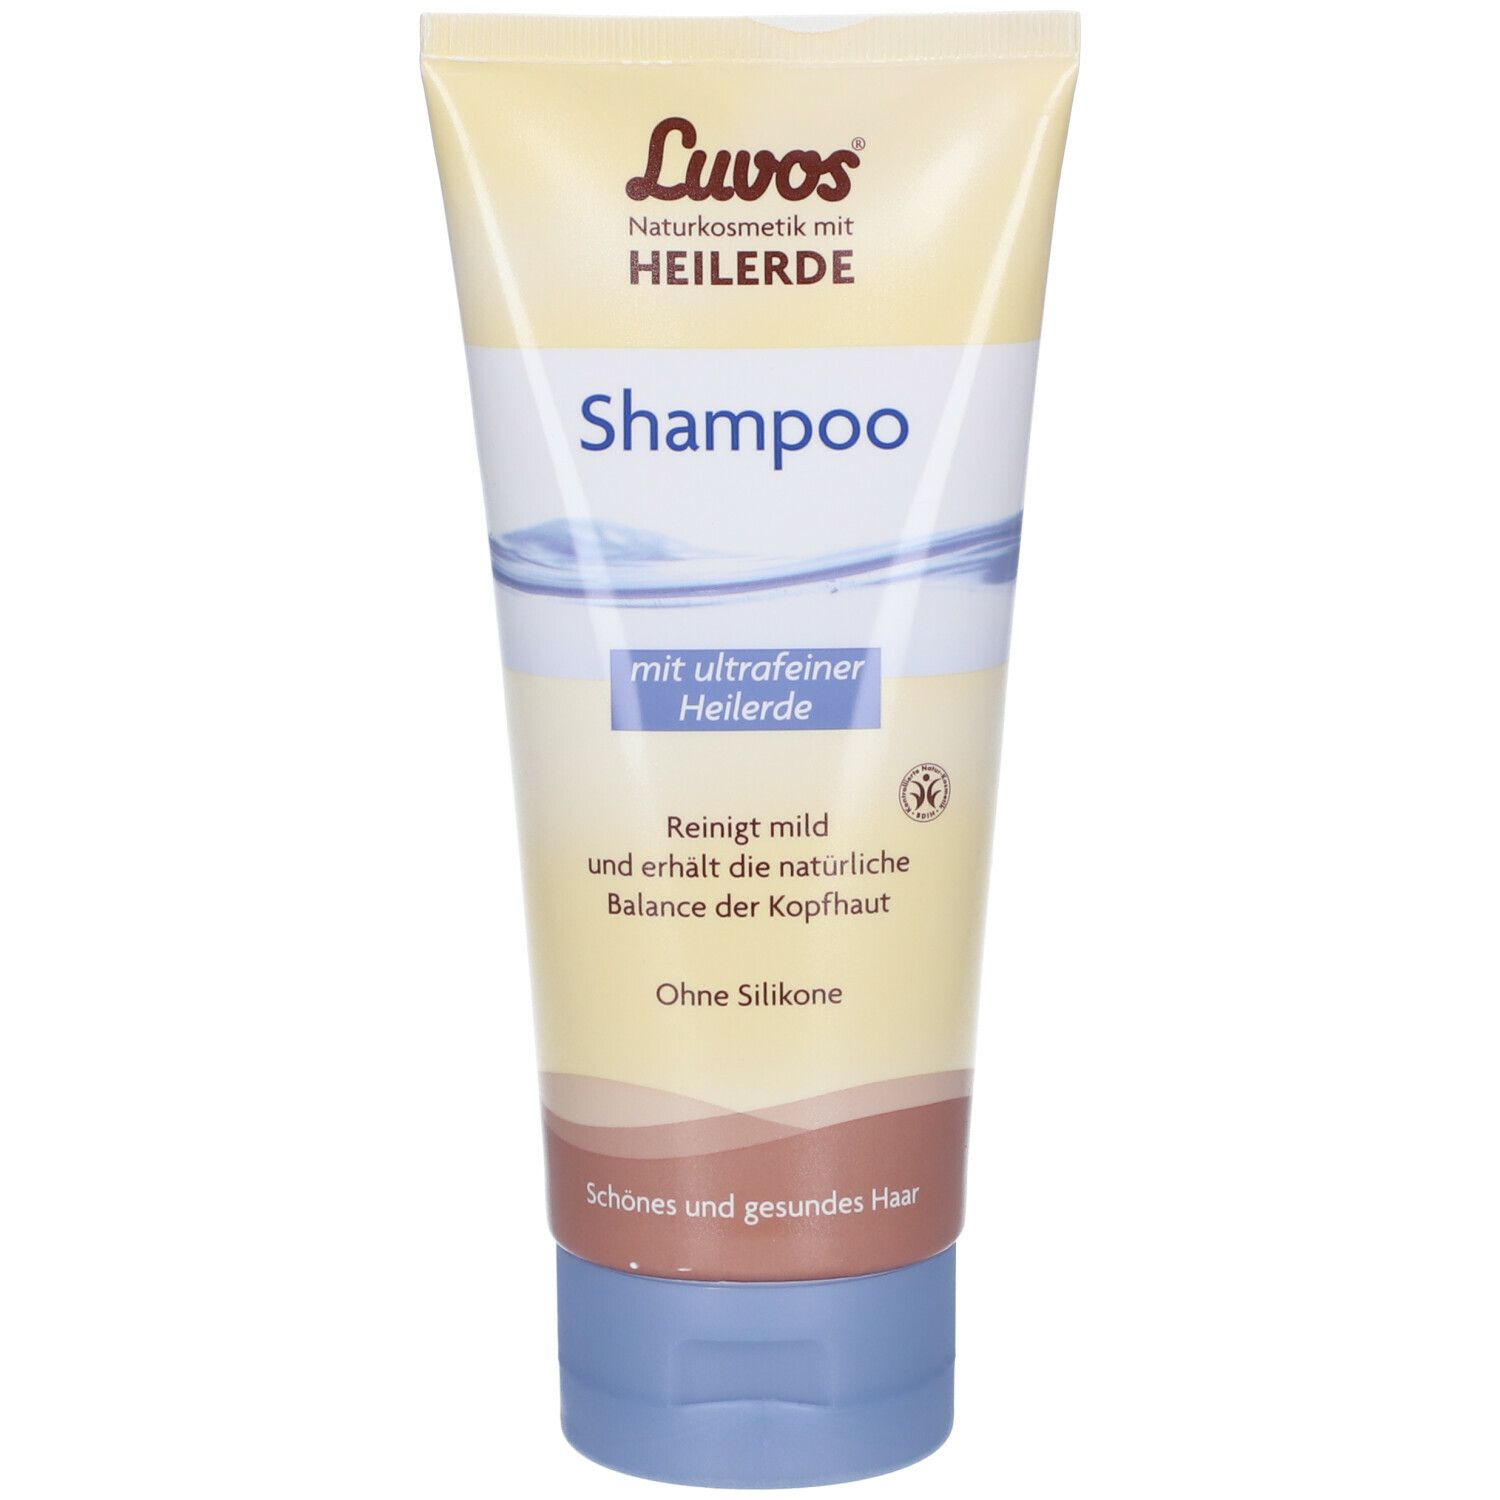 Luvos-Heilerde Shampoo